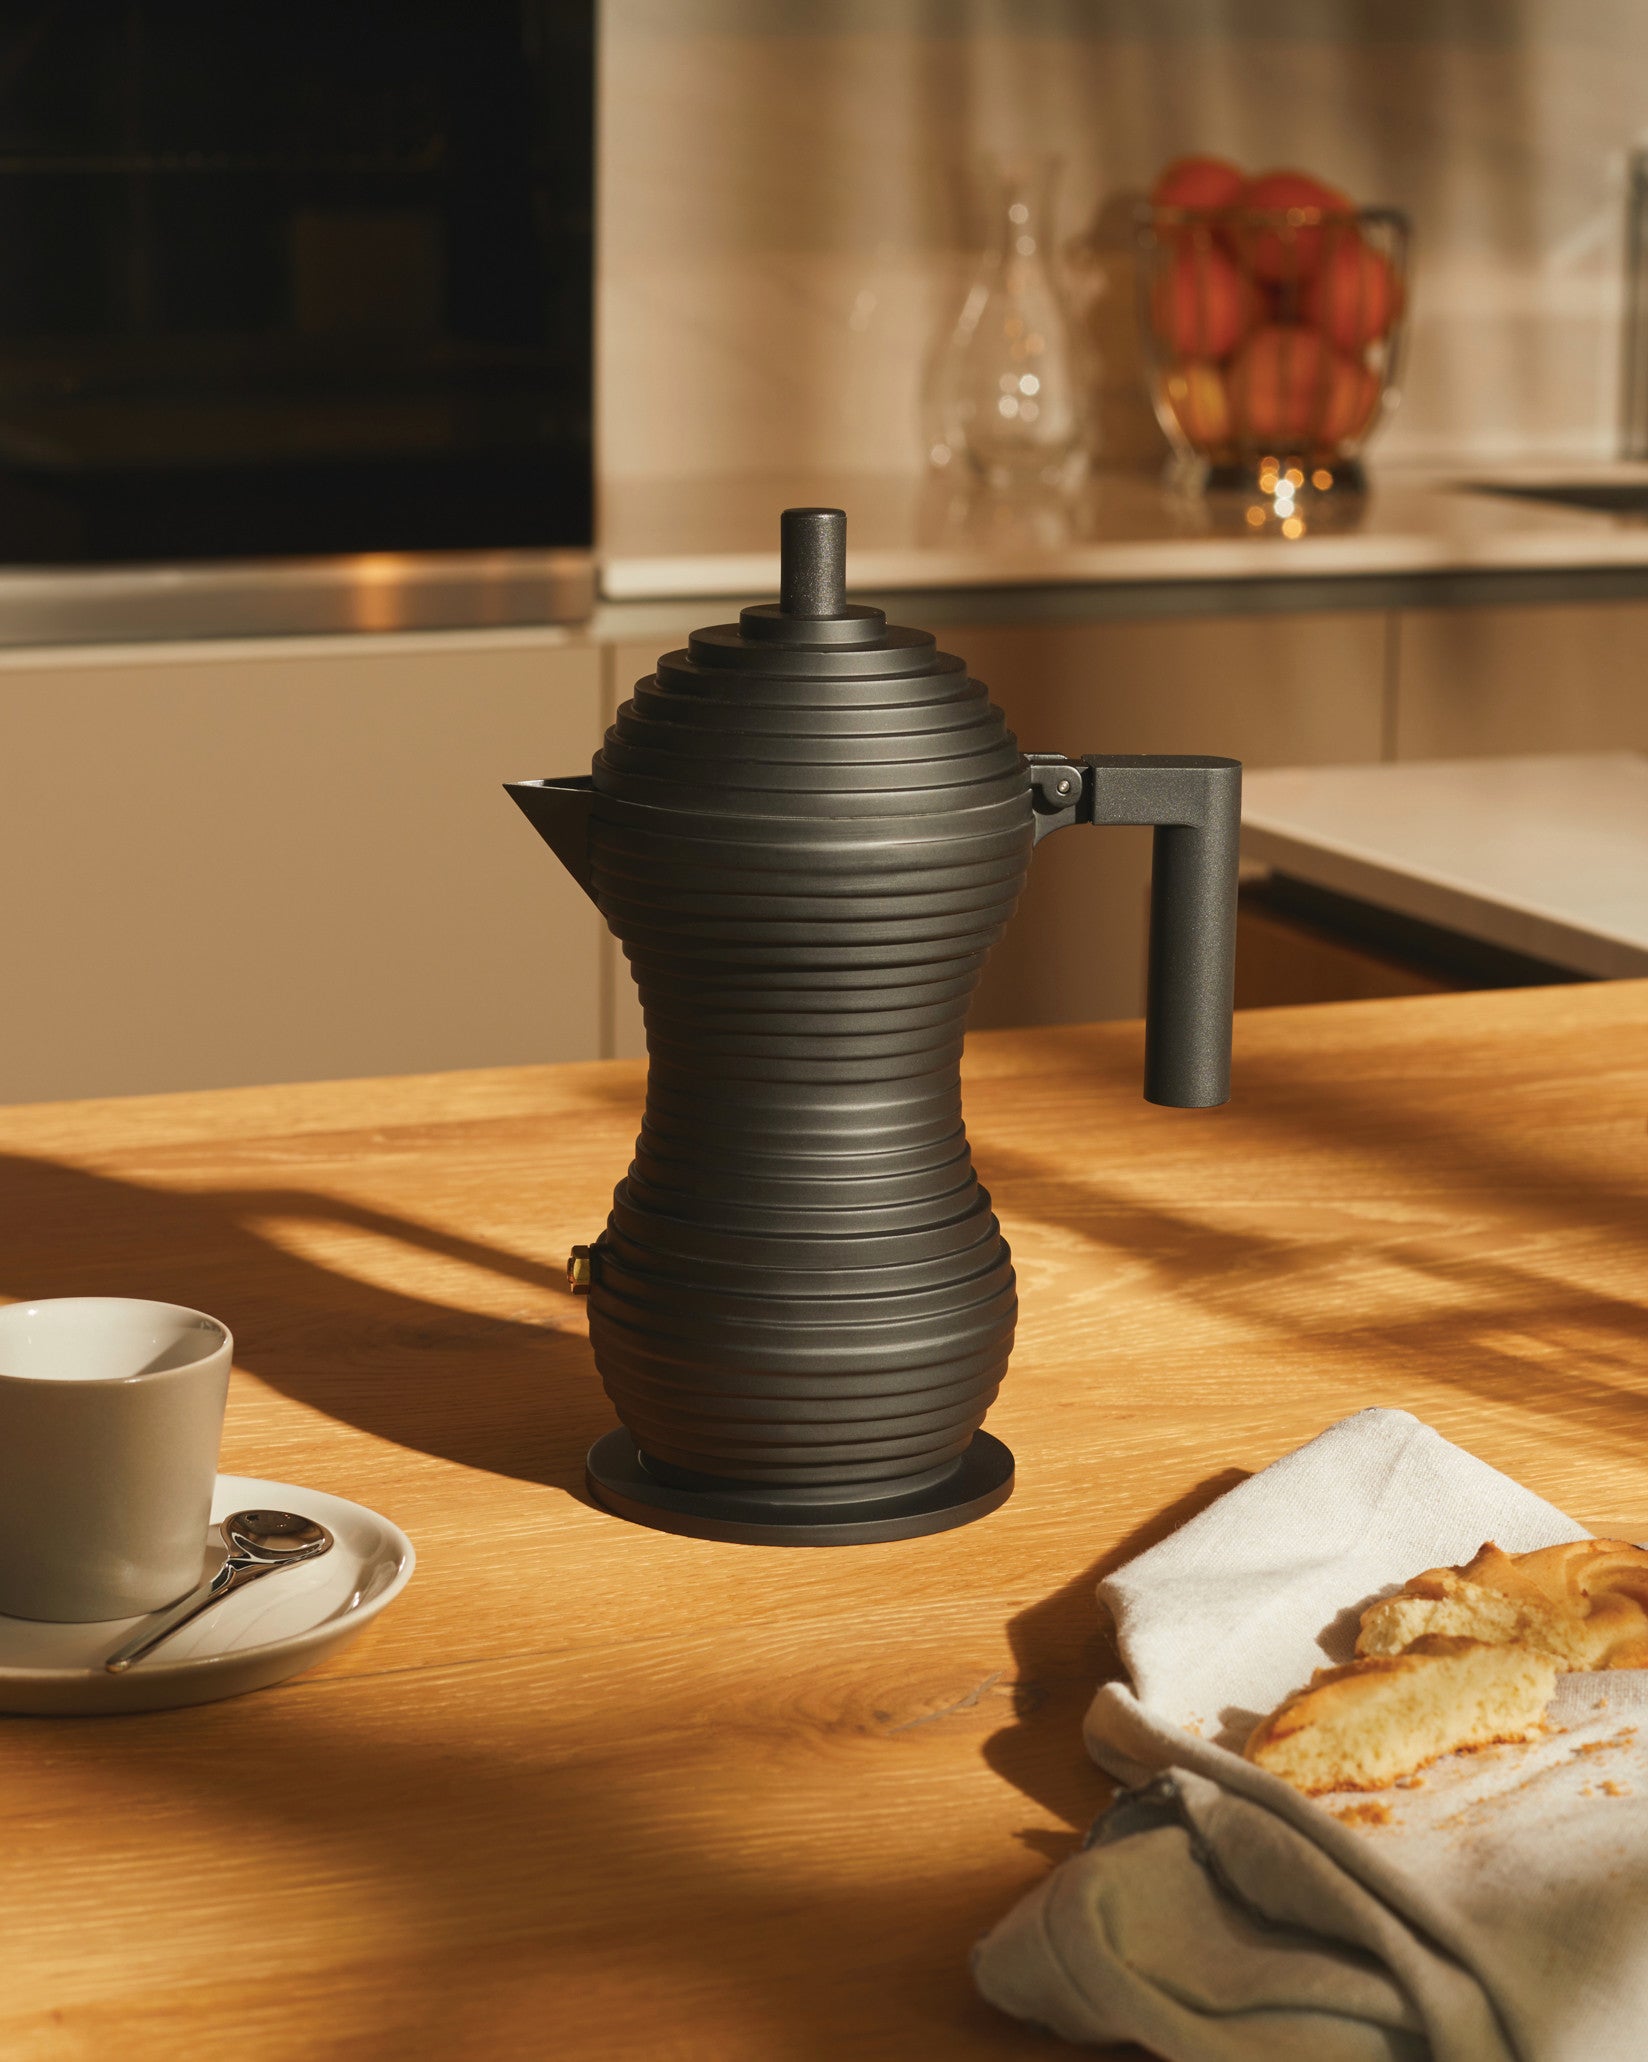 Espresso Coffee Maker Pulcina 1 Cup – Bright Kitchen